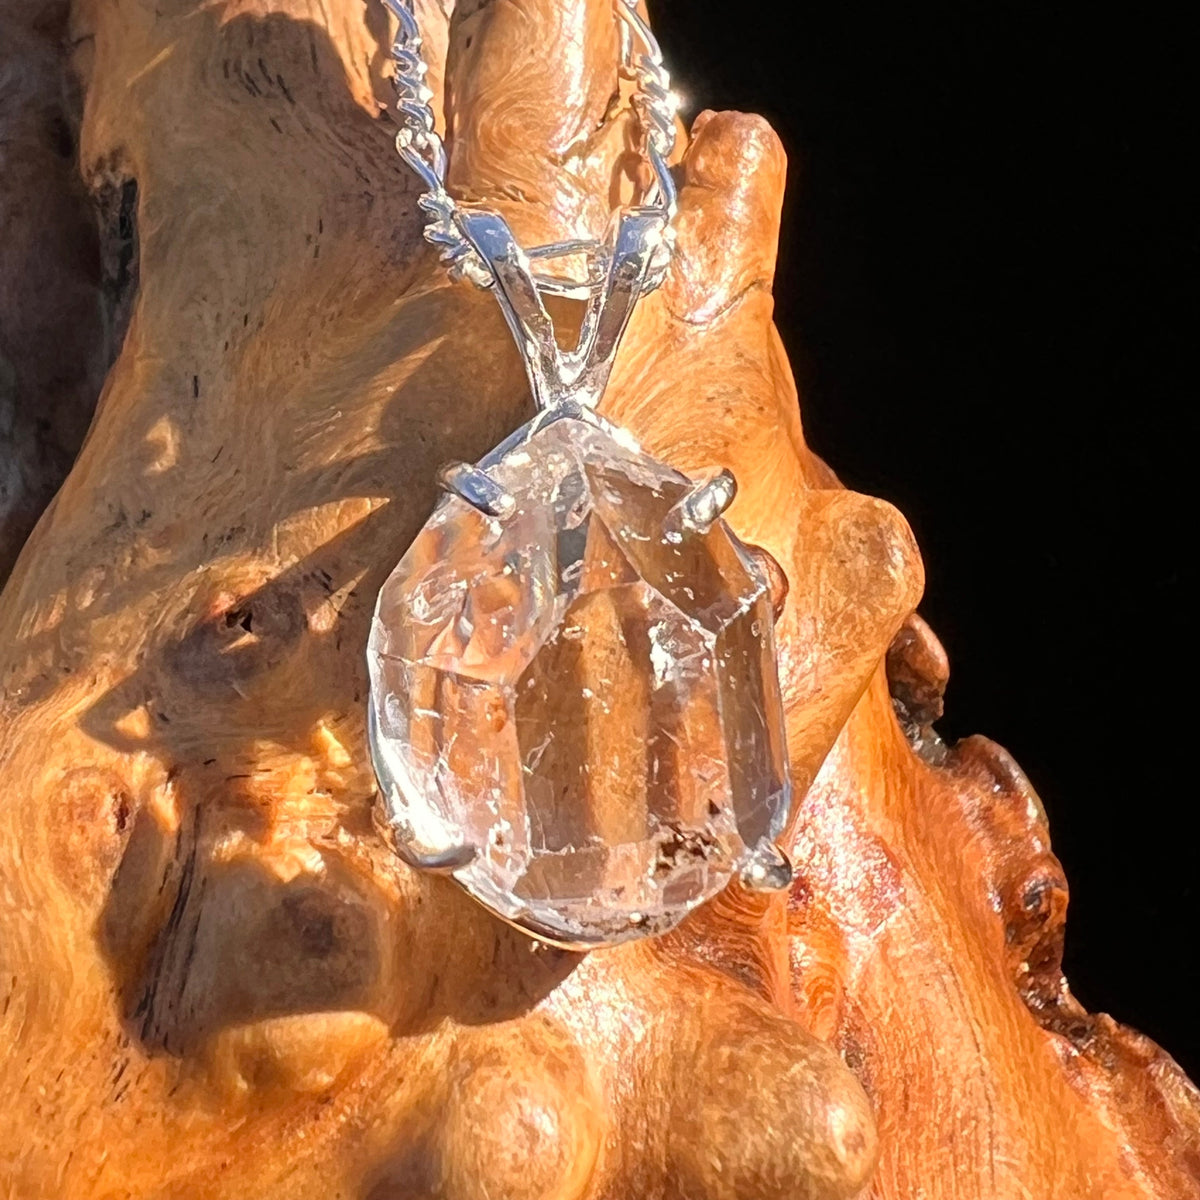 Herkimer Diamond Pendant Sterling Silver #6068-Moldavite Life